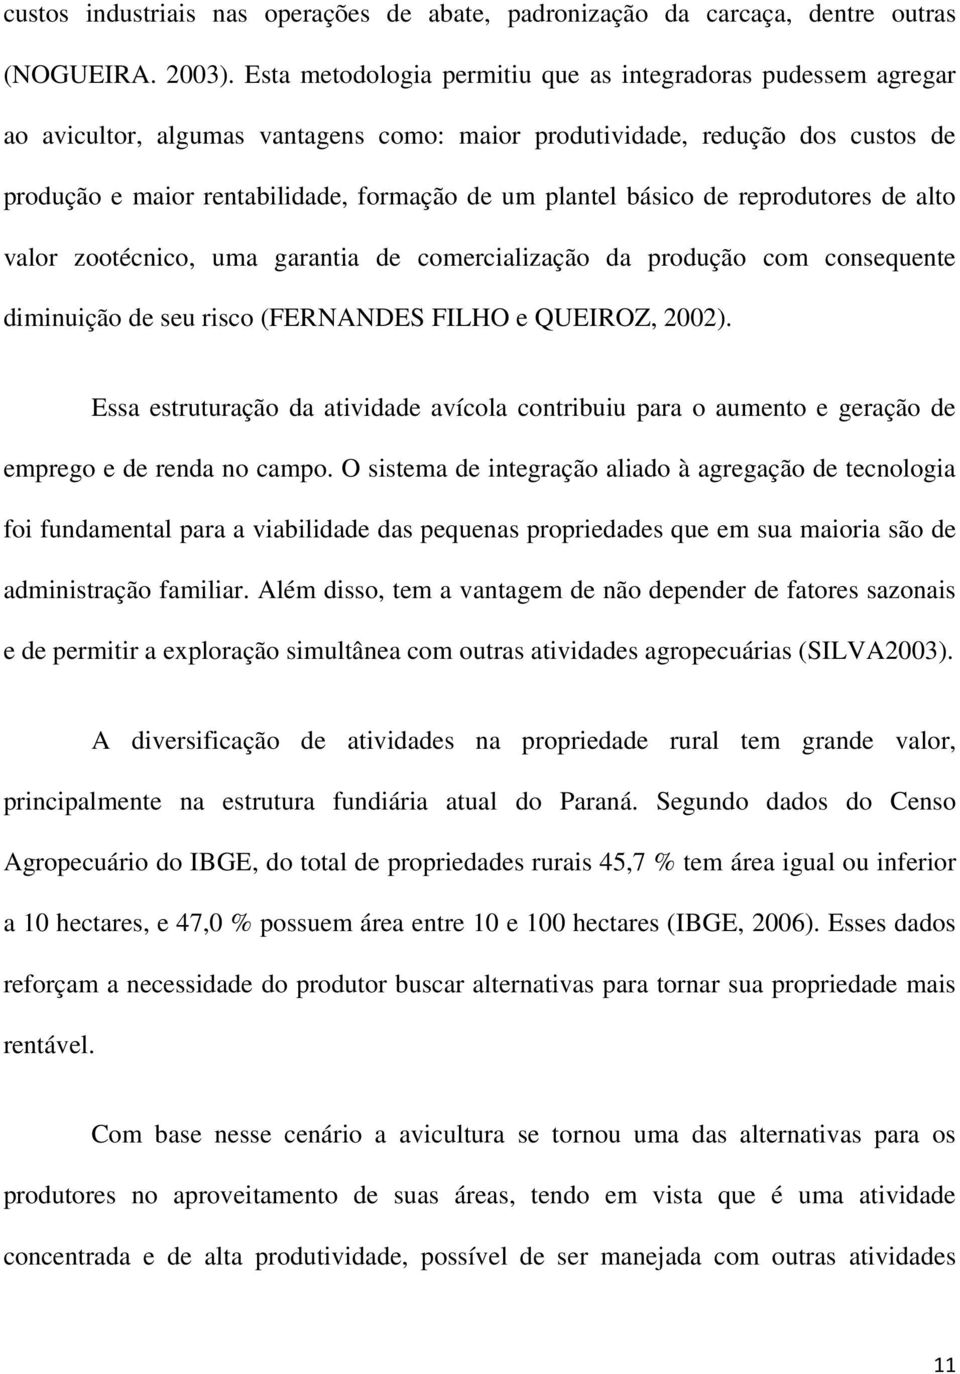 básico de reprodutores de alto valor zootécnico, uma garantia de comercialização da produção com consequente diminuição de seu risco (FERNANDES FILHO e QUEIROZ, 2002).